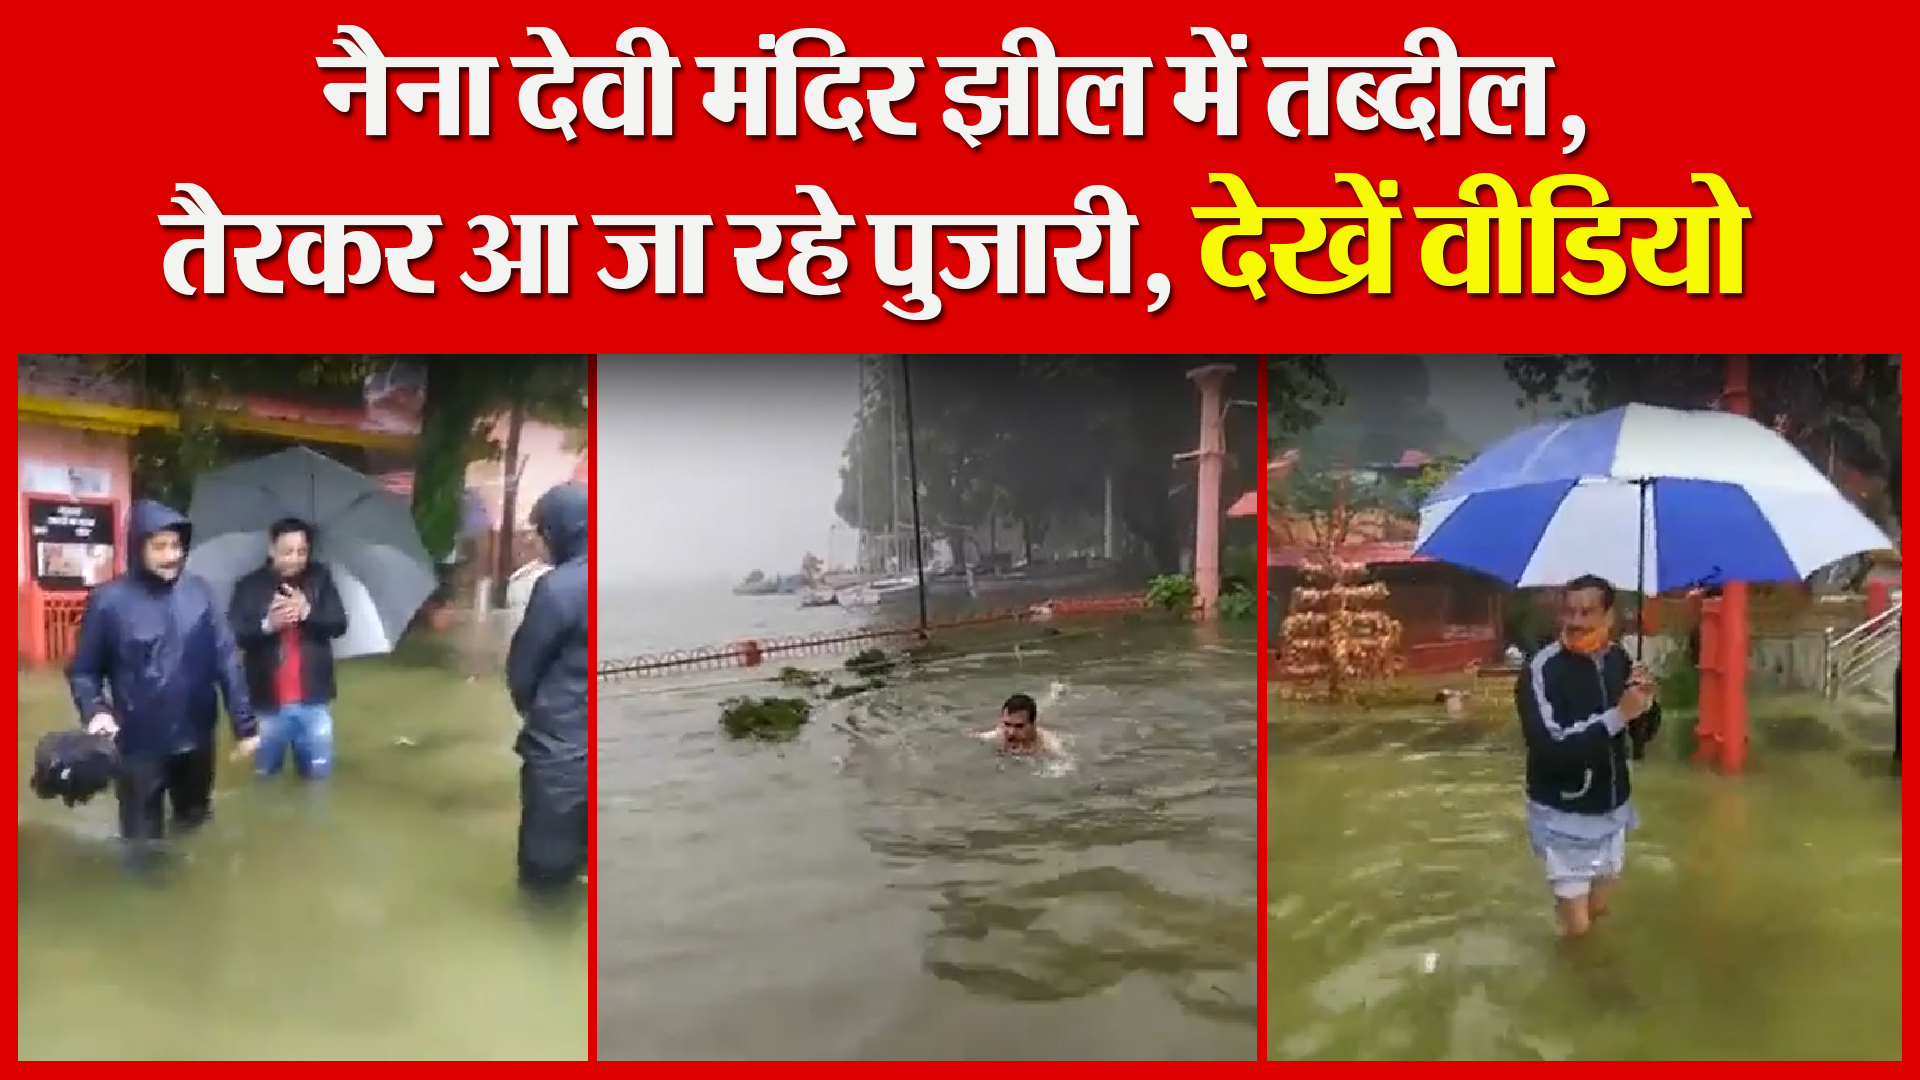 नैनीताल: नैना देवी मंदिर झील में तब्दील, तैरकर आ जा रहे पुजारी, देखें वीडियो